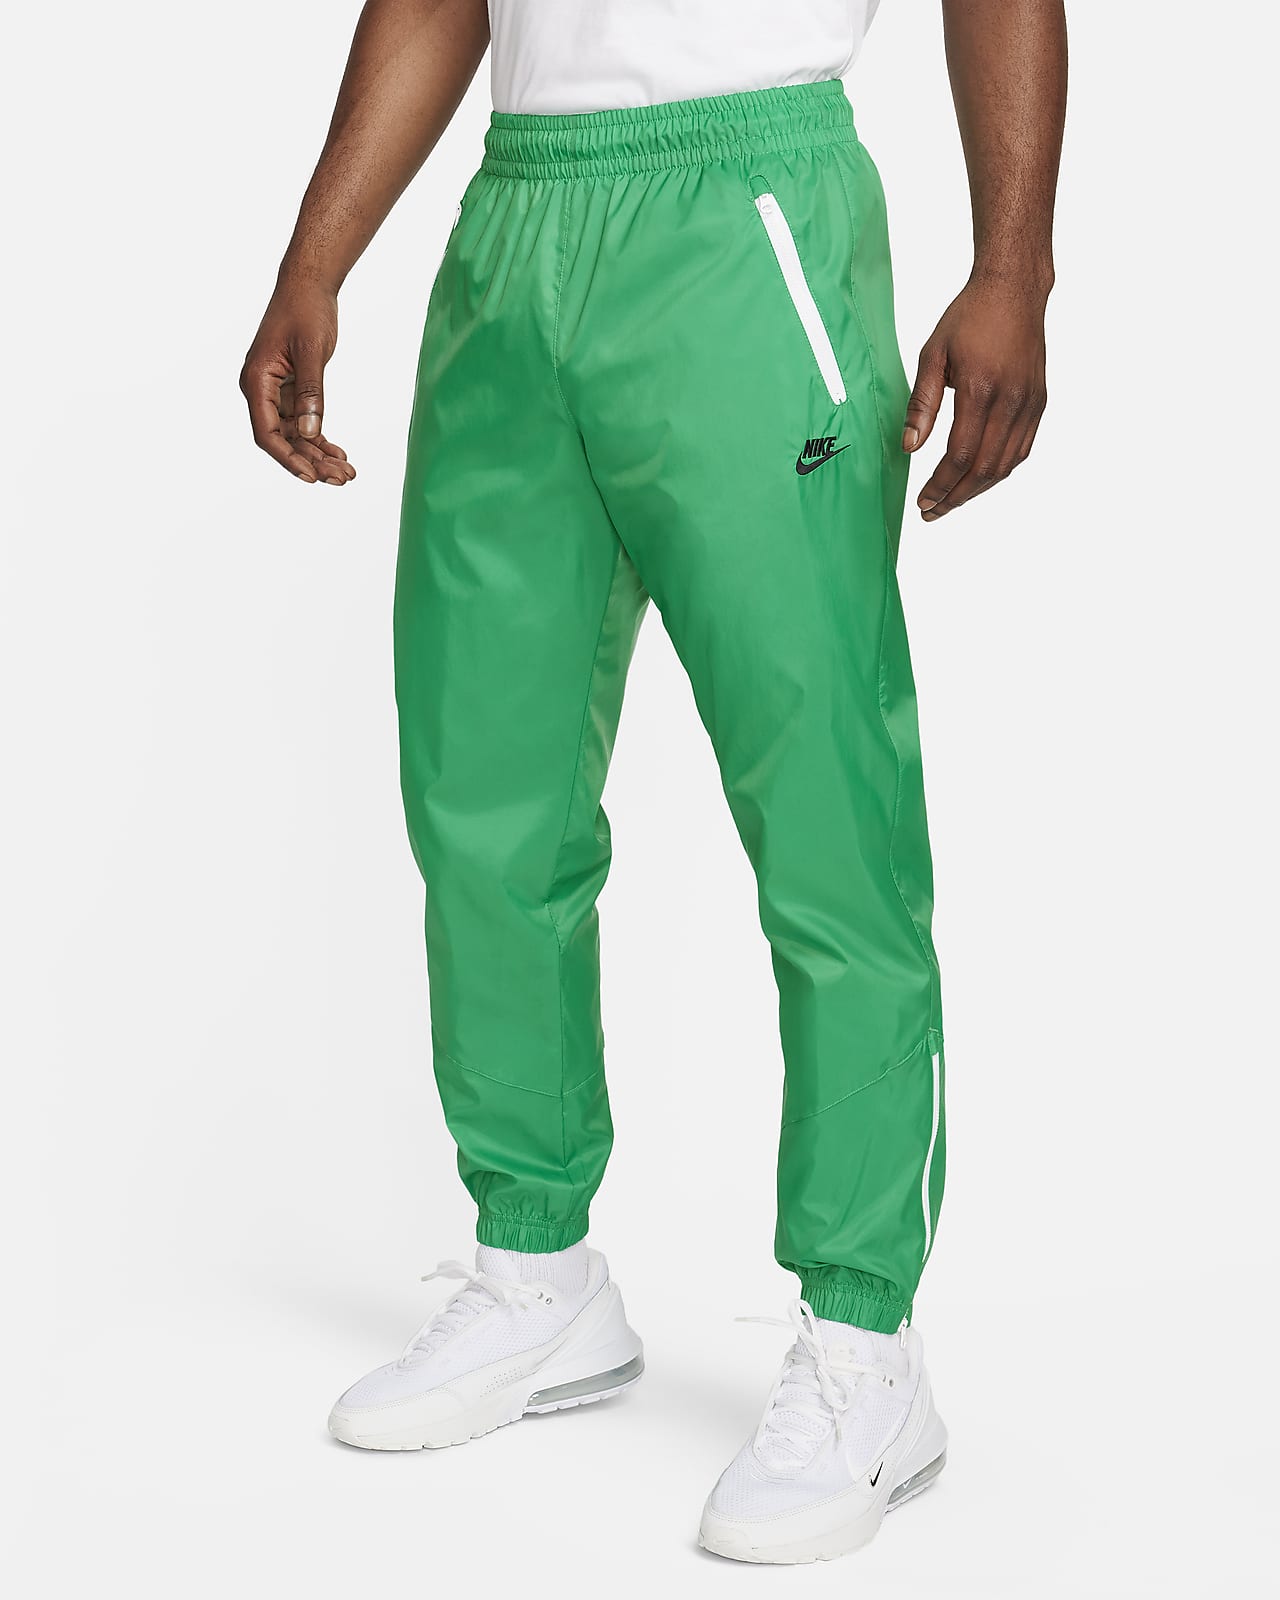 Ανδρικό υφαντό παντελόνι με επένδυση Nike Windrunner